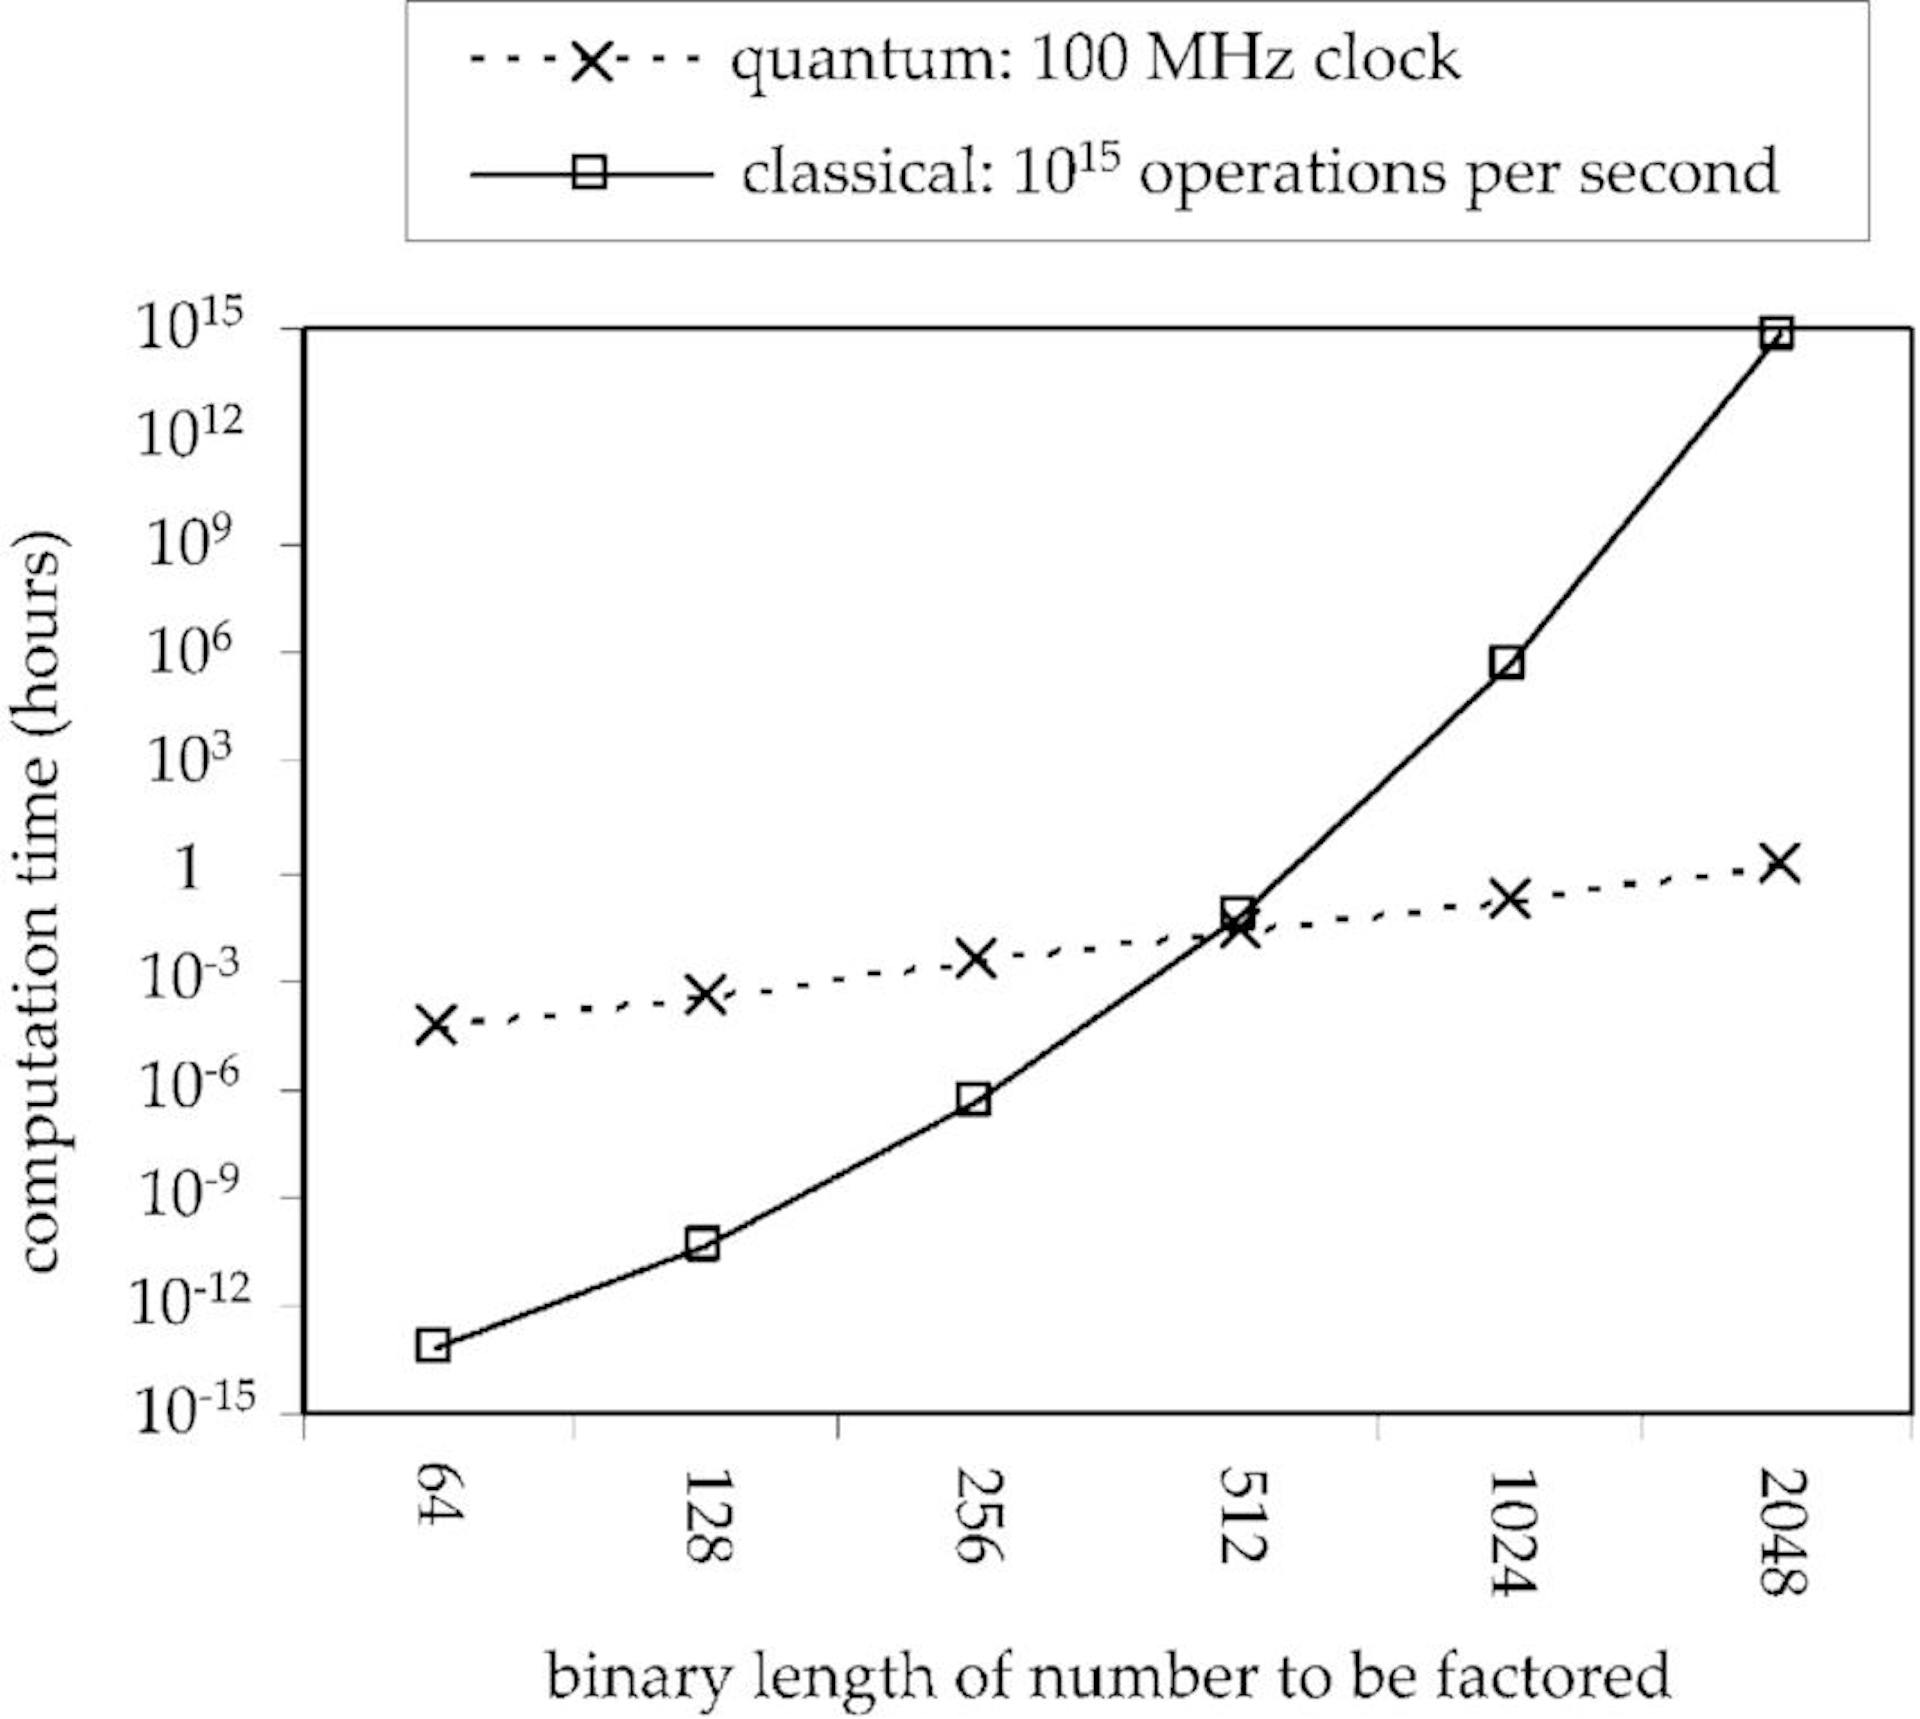 出典 - https://www.researchgate.net/figure/Comparison-of-estimated-computation-time-in-hours-for-the-problem-of-factoring-numbers-of_fig1_2986358